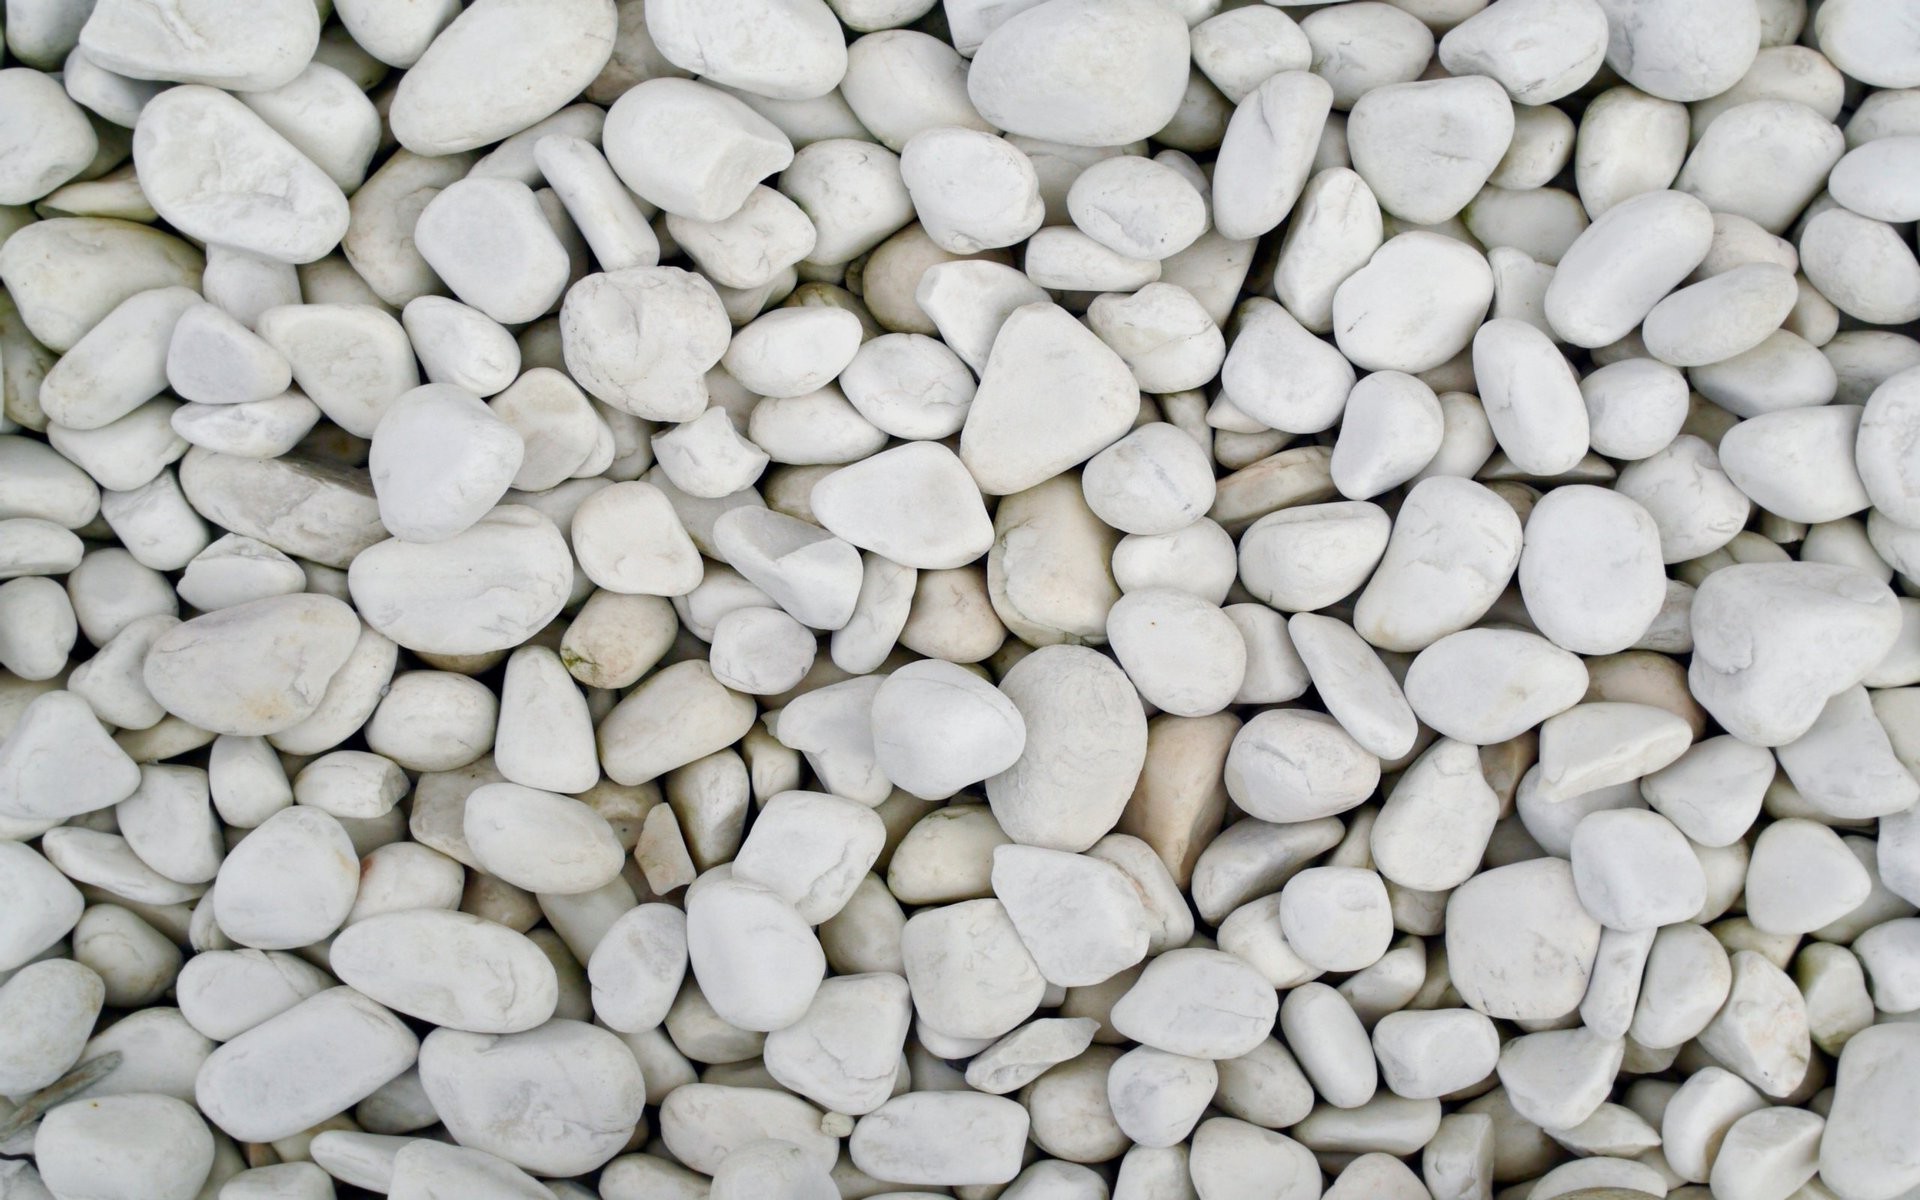 White-colored sea pebbles